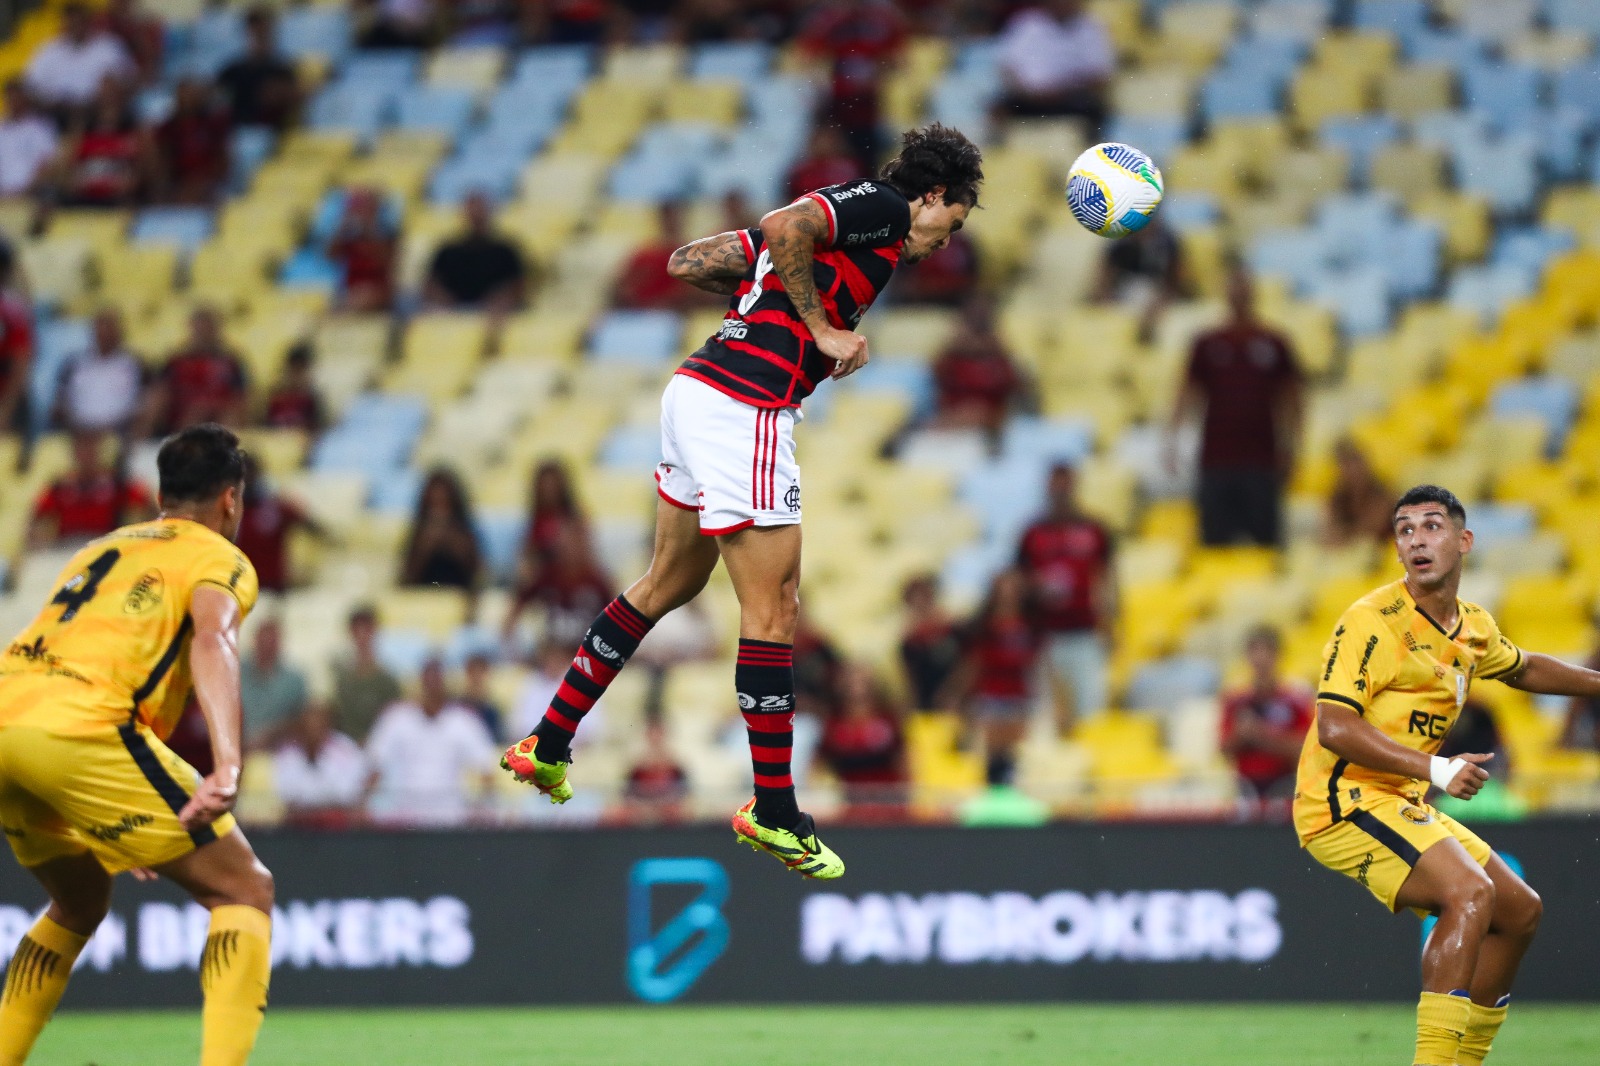 “Em busca da vitória e da classificação”, diz jogador do Amazonas sobre jogo com Flamengo